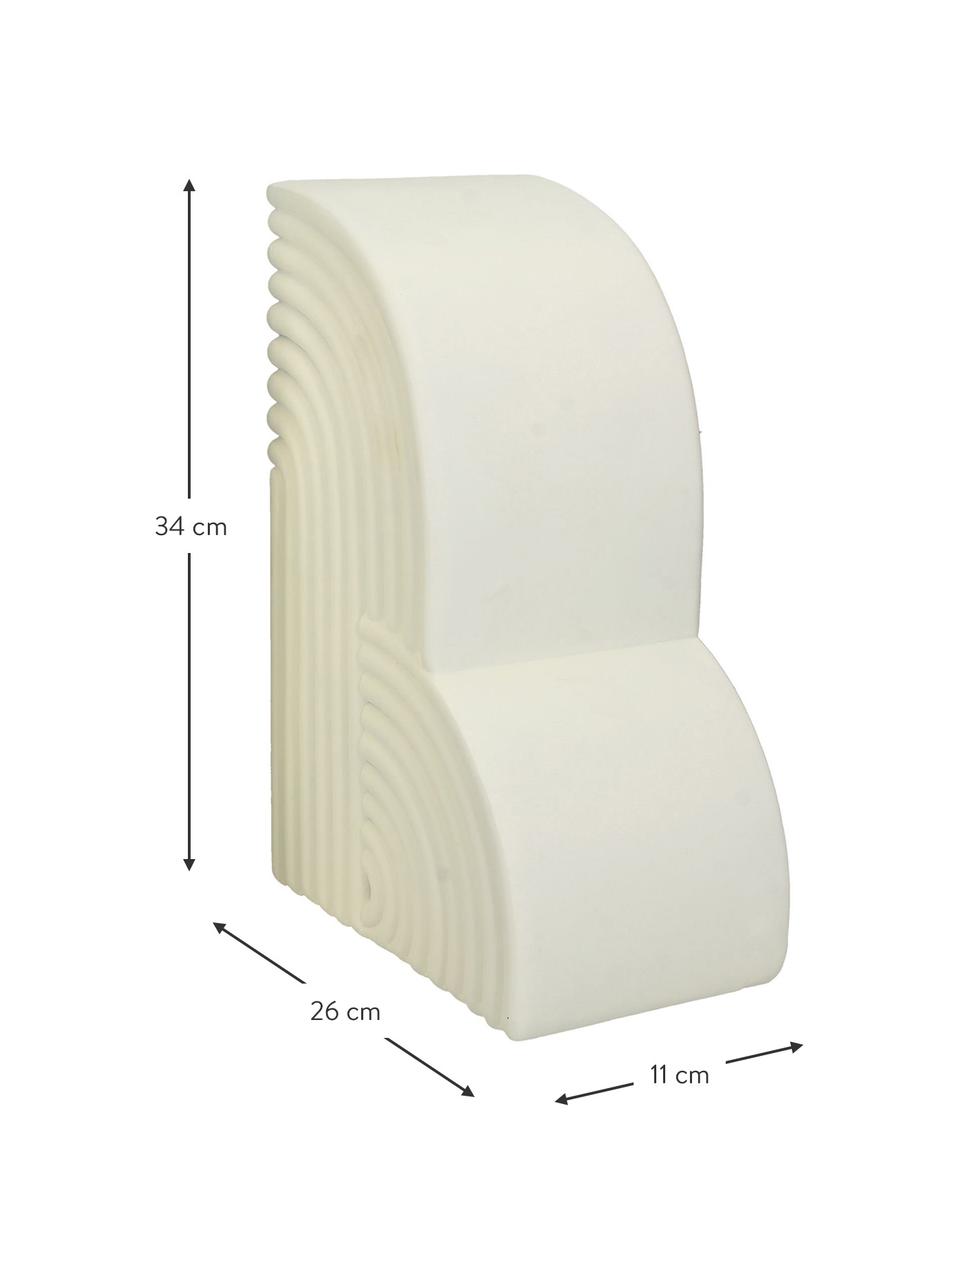 Vysoké knižní zarážky Geometrical, 2 ks, Polyresin, Bílá, Š 26 cm, V 34 cm